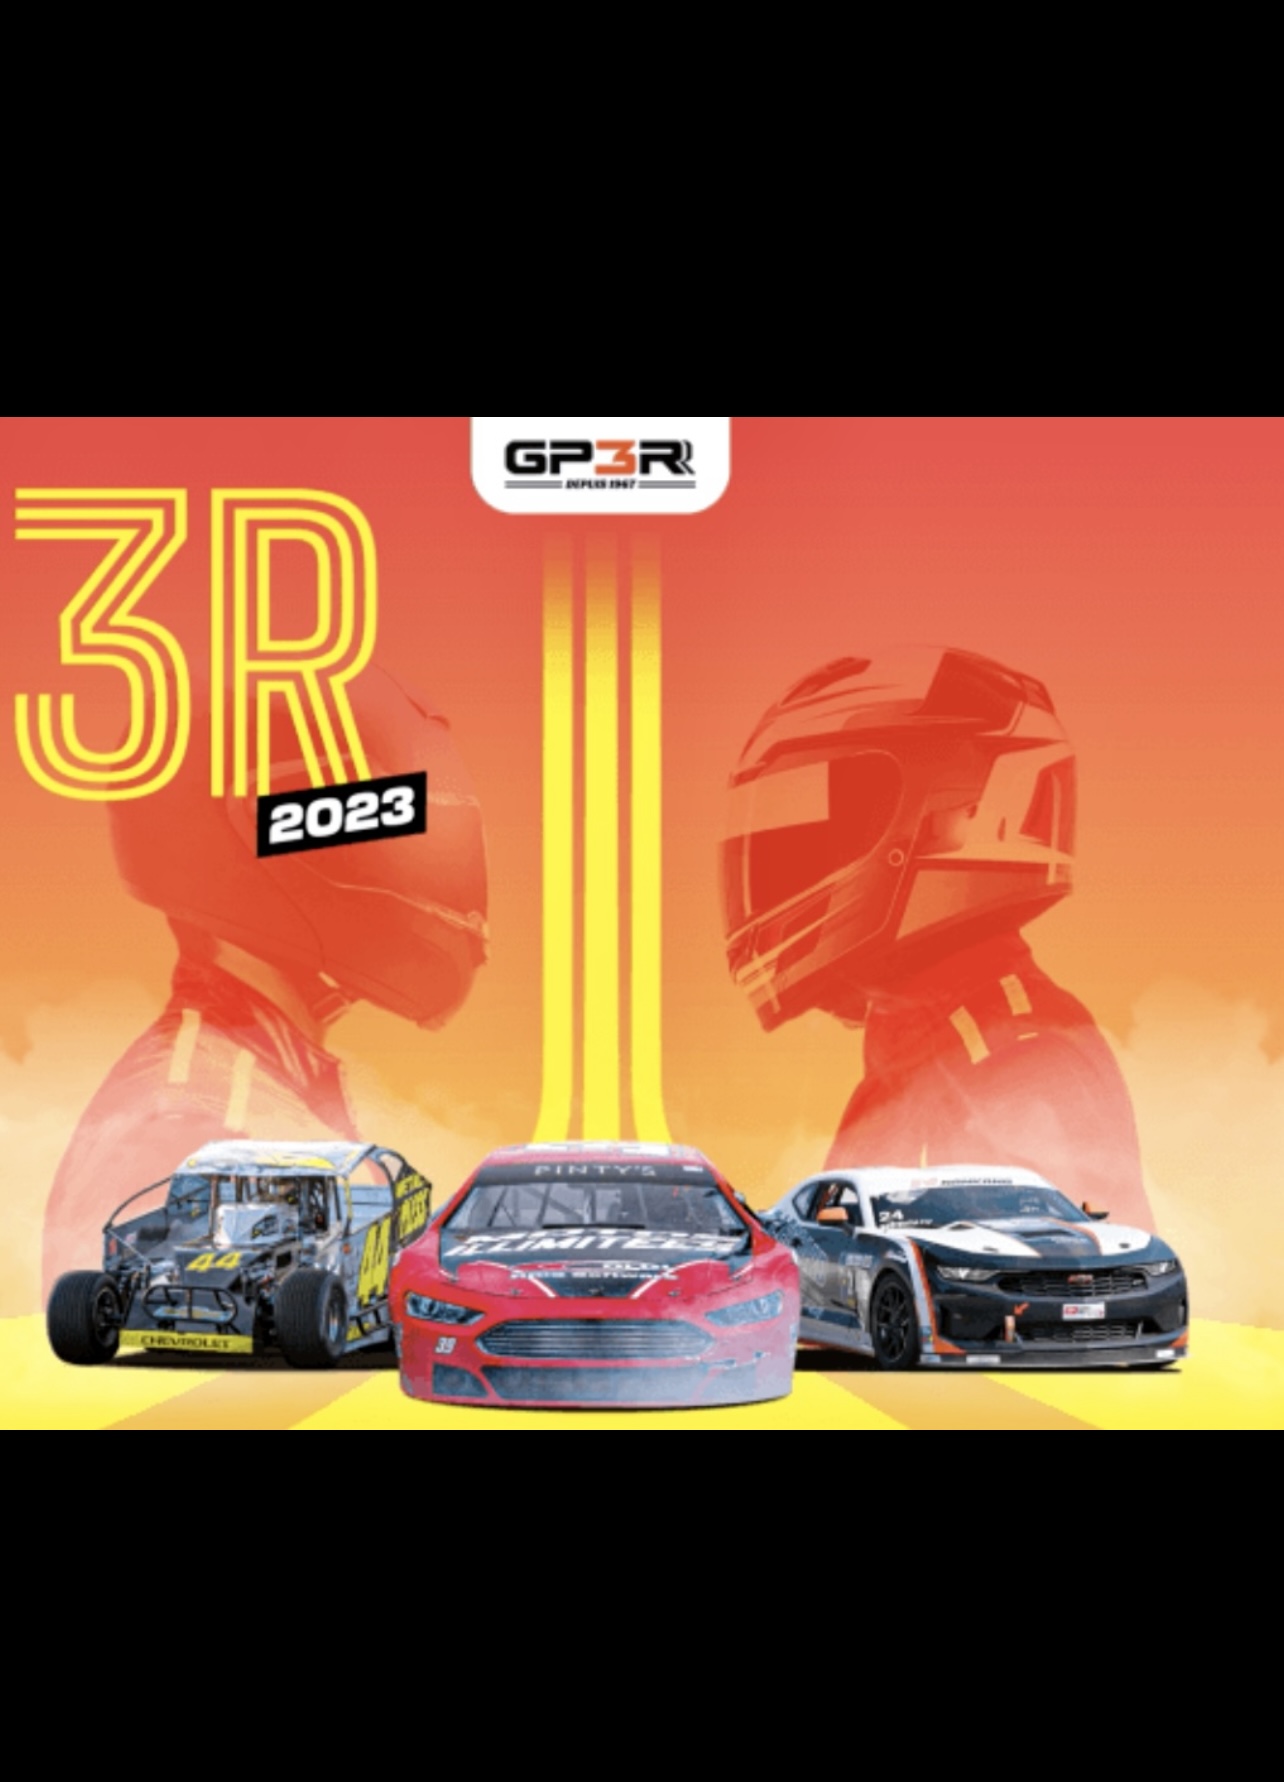 Le Grand-Prix de Trois-Rivières NASCAR 3R 2020 est un événement automobile américain de premier plan.